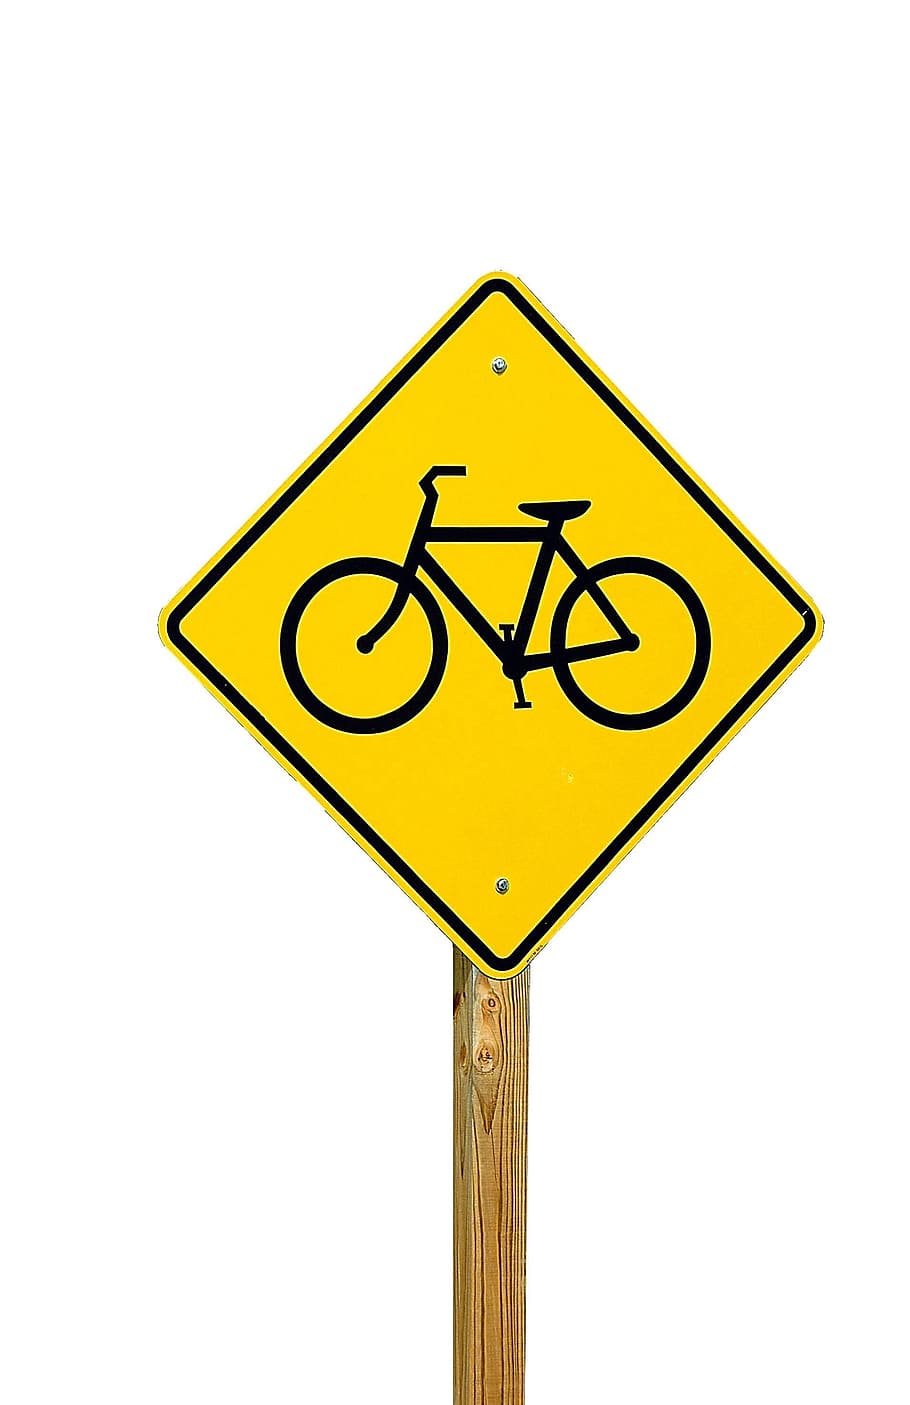 peringatan, lalu lintas, bahaya, keselamatan, sepeda, jalan, tanda, transportasi, simbol, hati-hati